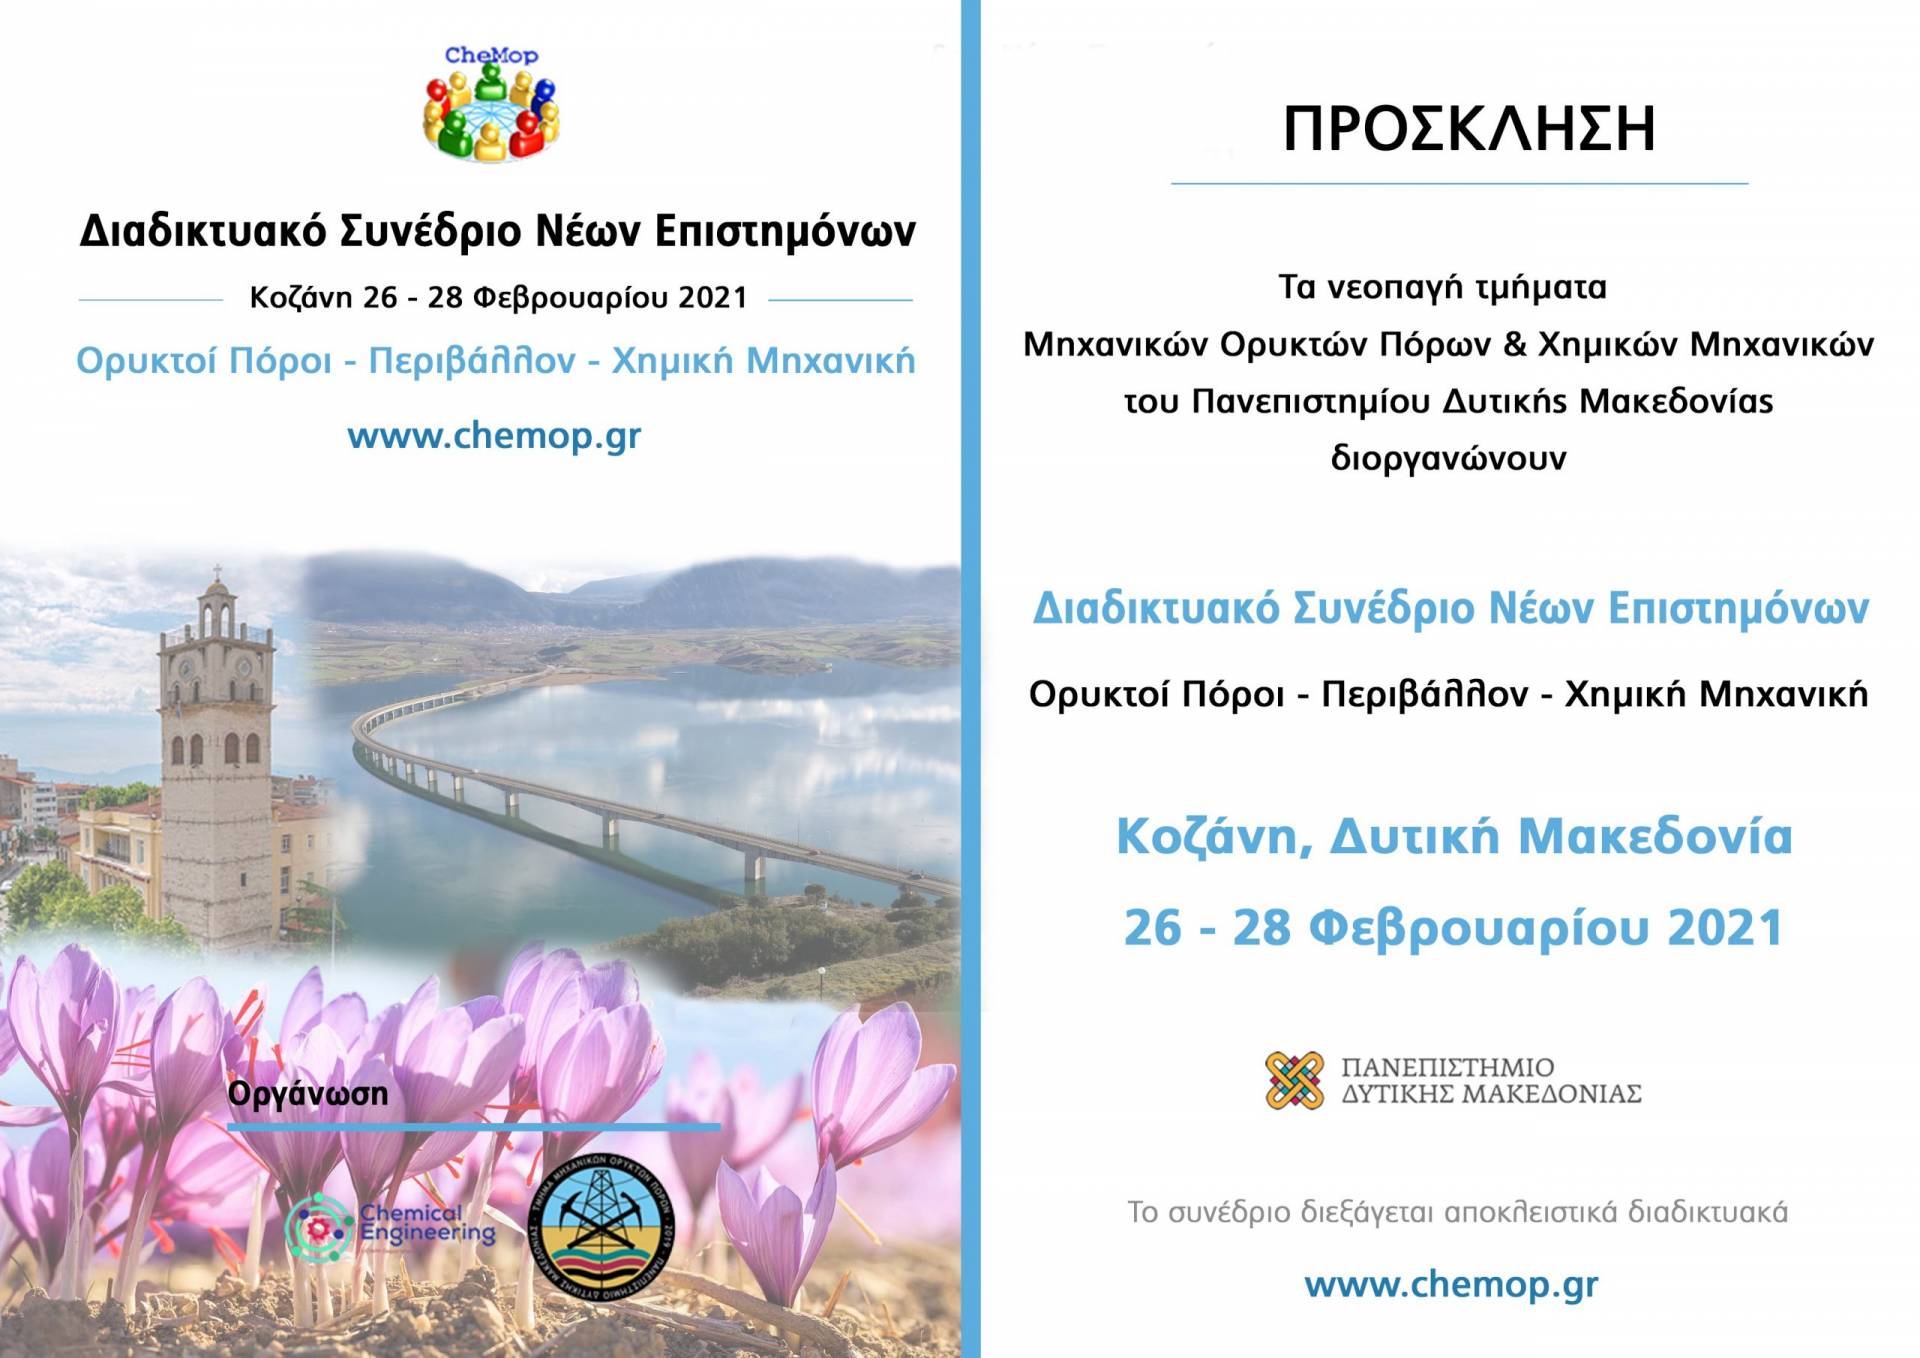 Πανεπιστήμιο Δυτικής Μακεδονίας- 1ο Διαδικτυακό Συνέδριο Νέων Επιστημόνων με θέμα «Ορυκτοί Πόροι-Περιβάλλον-Χημική Μηχανική» στις 26-28 Φεβρουαρίου